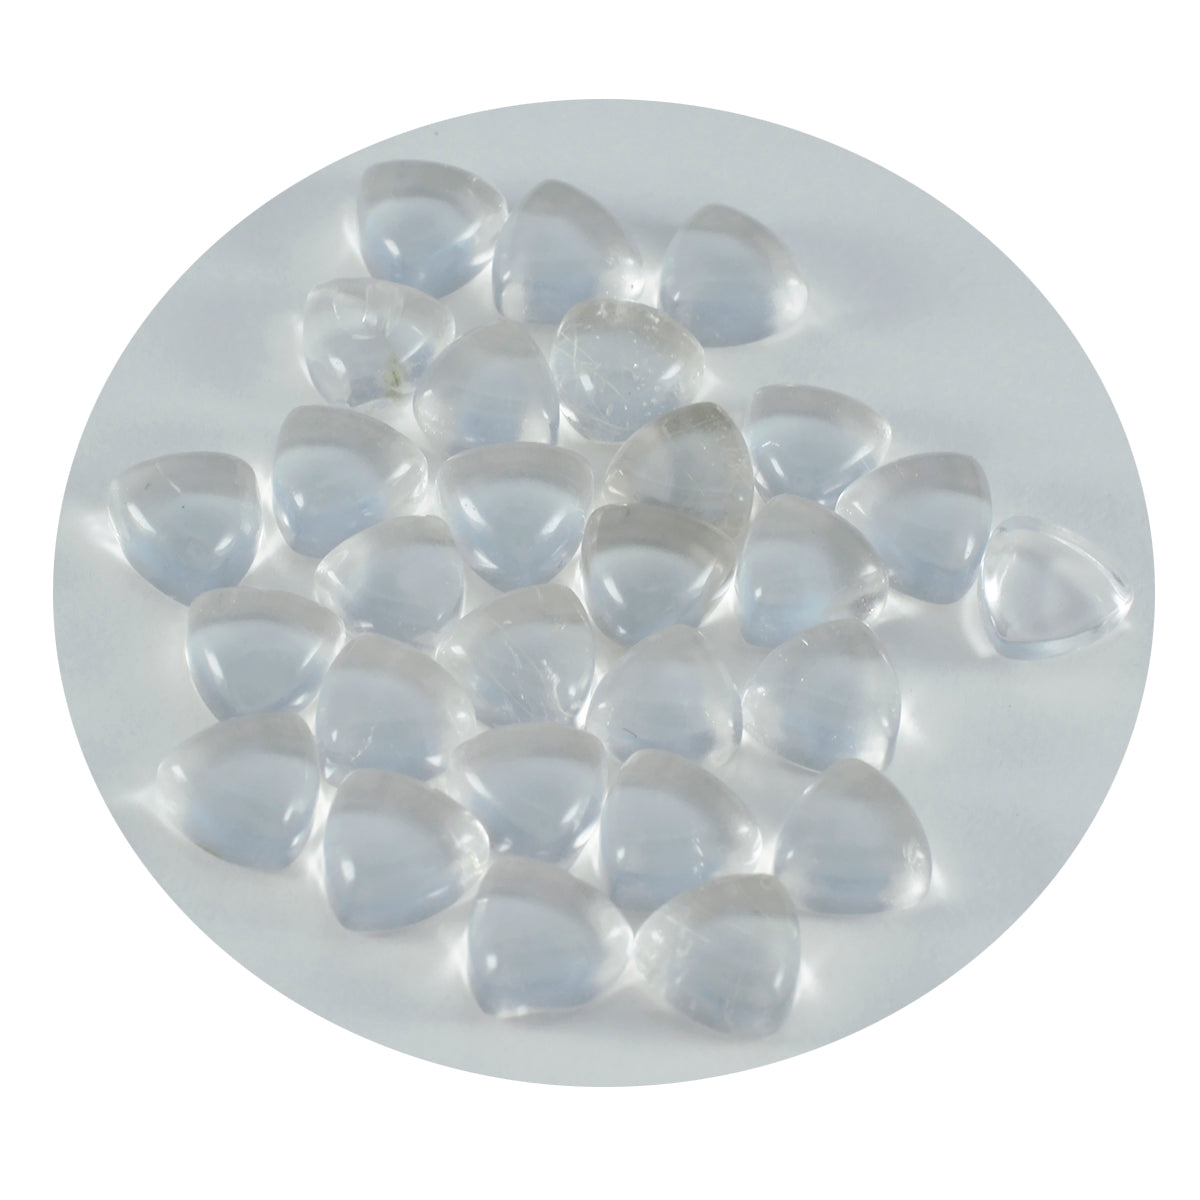 Riyogems 1 Stück weißer Kristallquarz-Cabochon, 9 x 9 mm, Billionenform, süßer Qualitätsedelstein